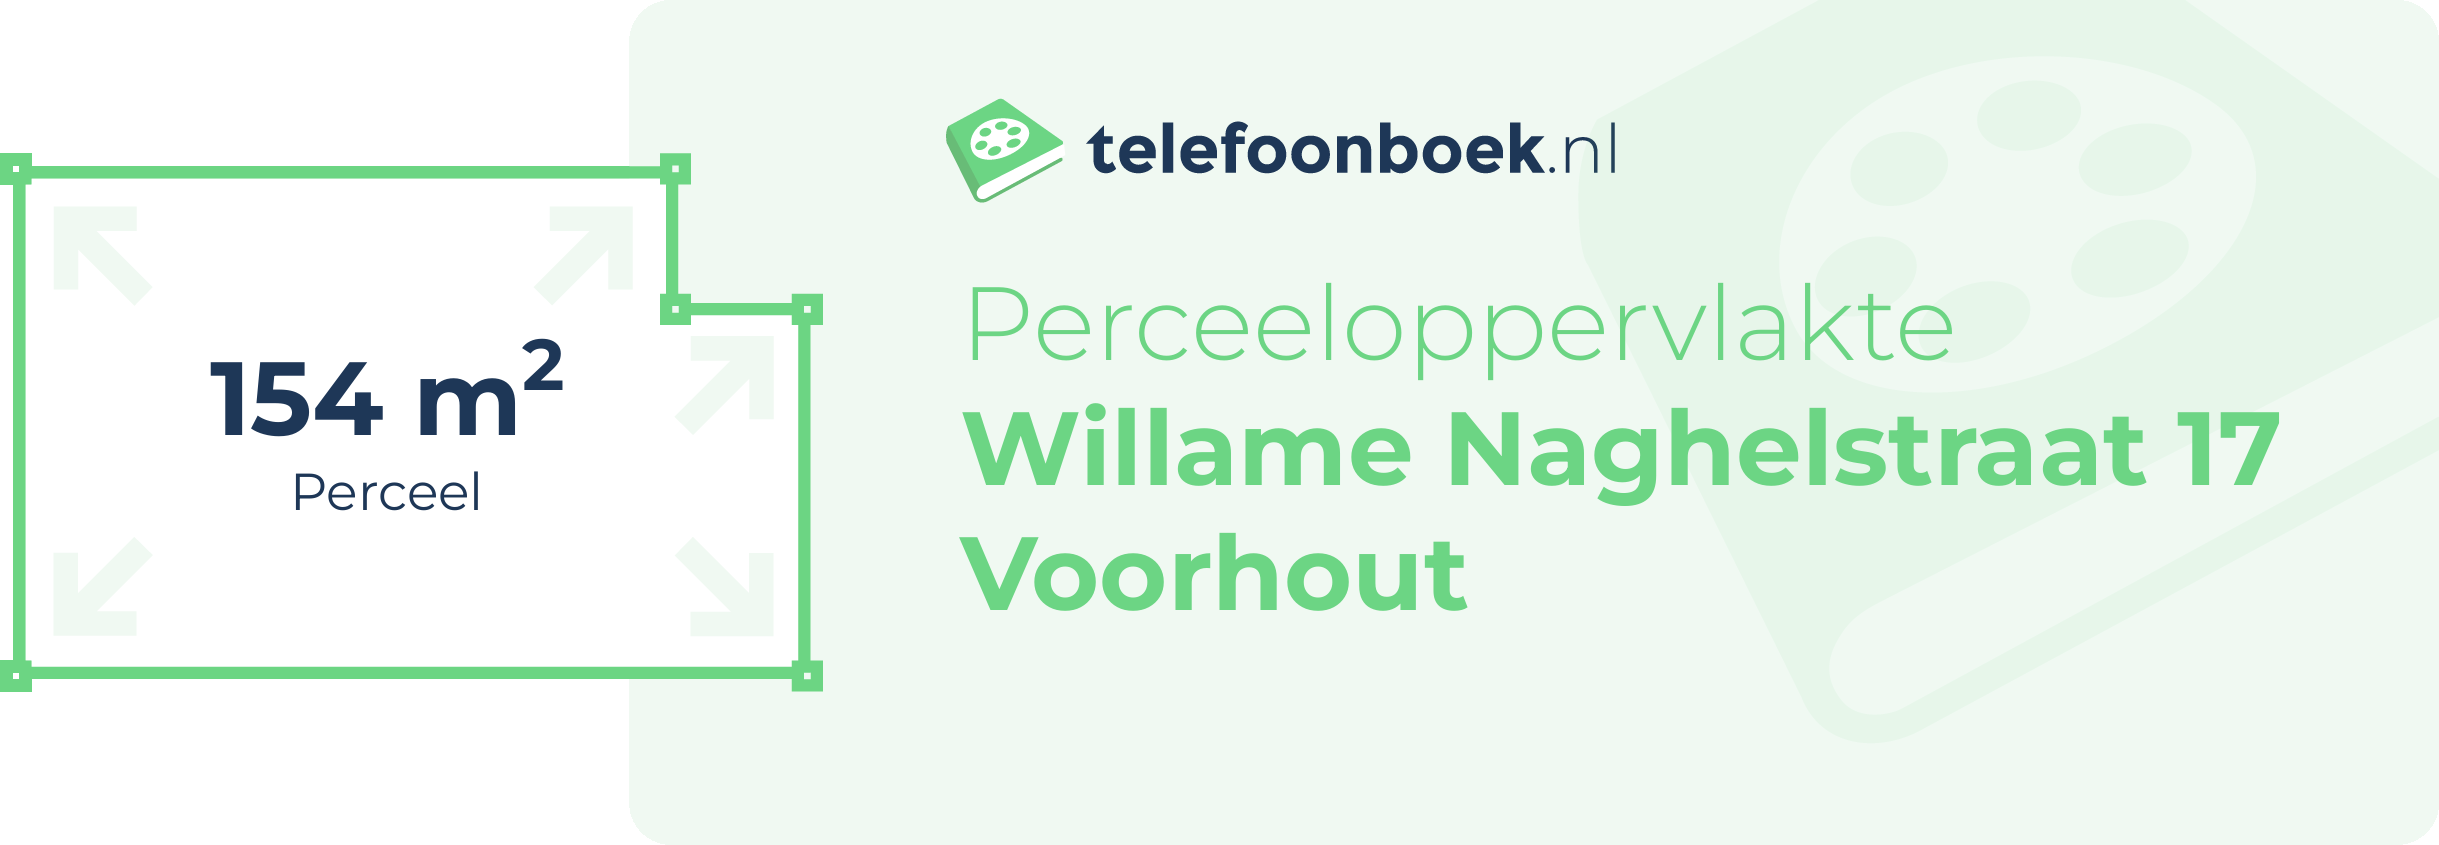 Perceeloppervlakte Willame Naghelstraat 17 Voorhout